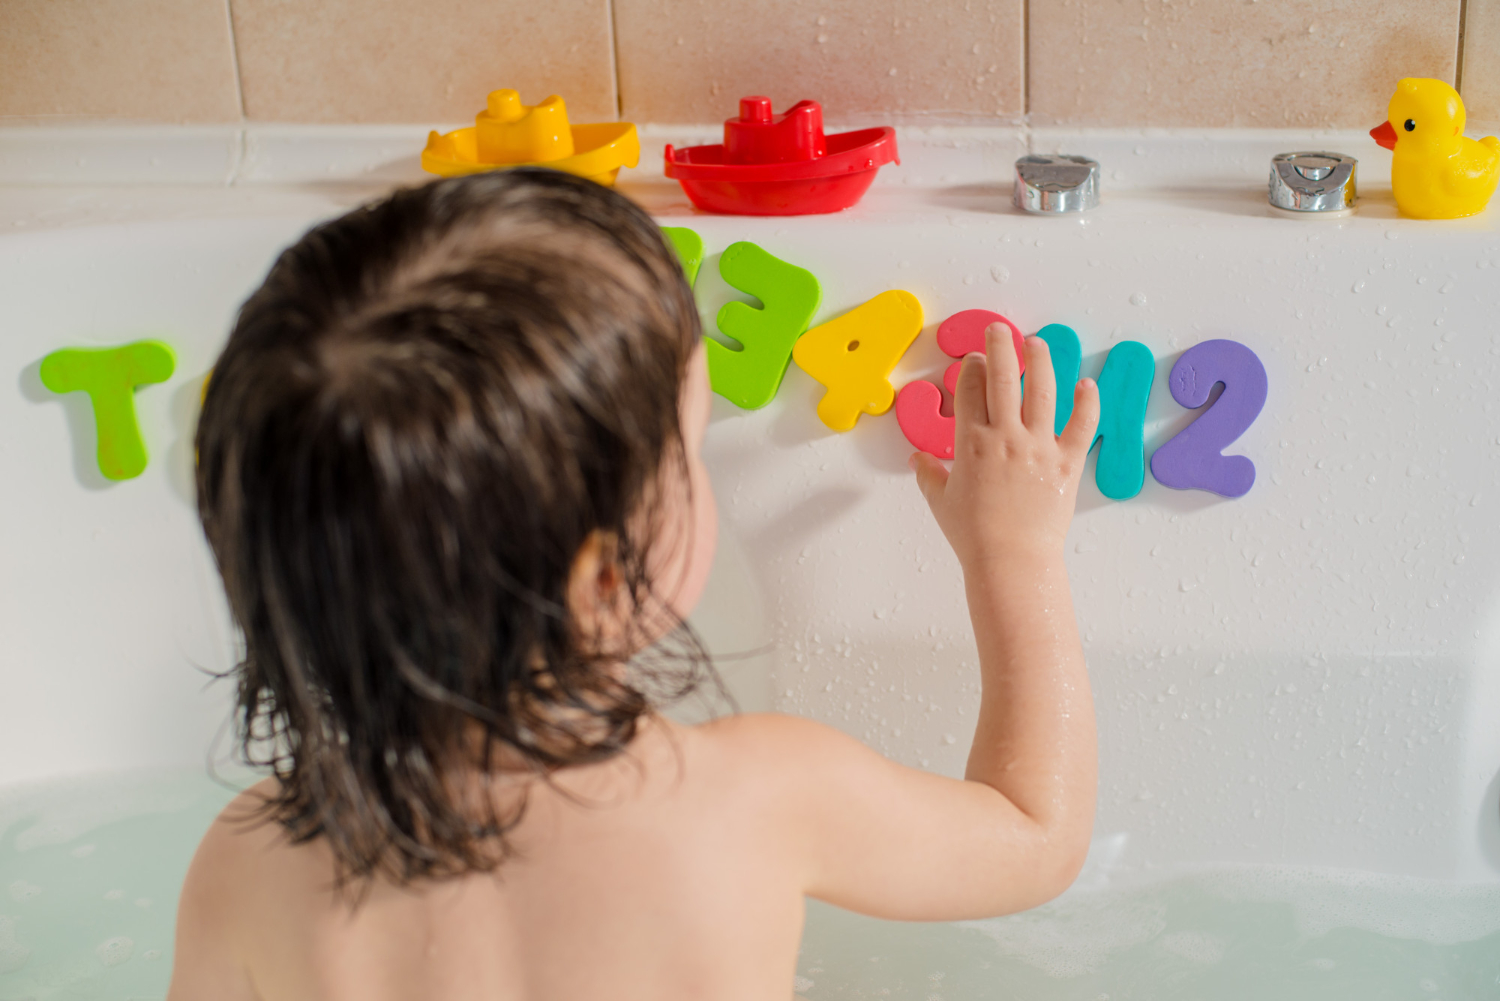 : Θεματική εικόνα για παιδικό μπάνιο και διακόσμηση. Μικρό παιδάκι στην μπανιέρα παίζει με πολύχρωμα γράμματα και αριθμούς.